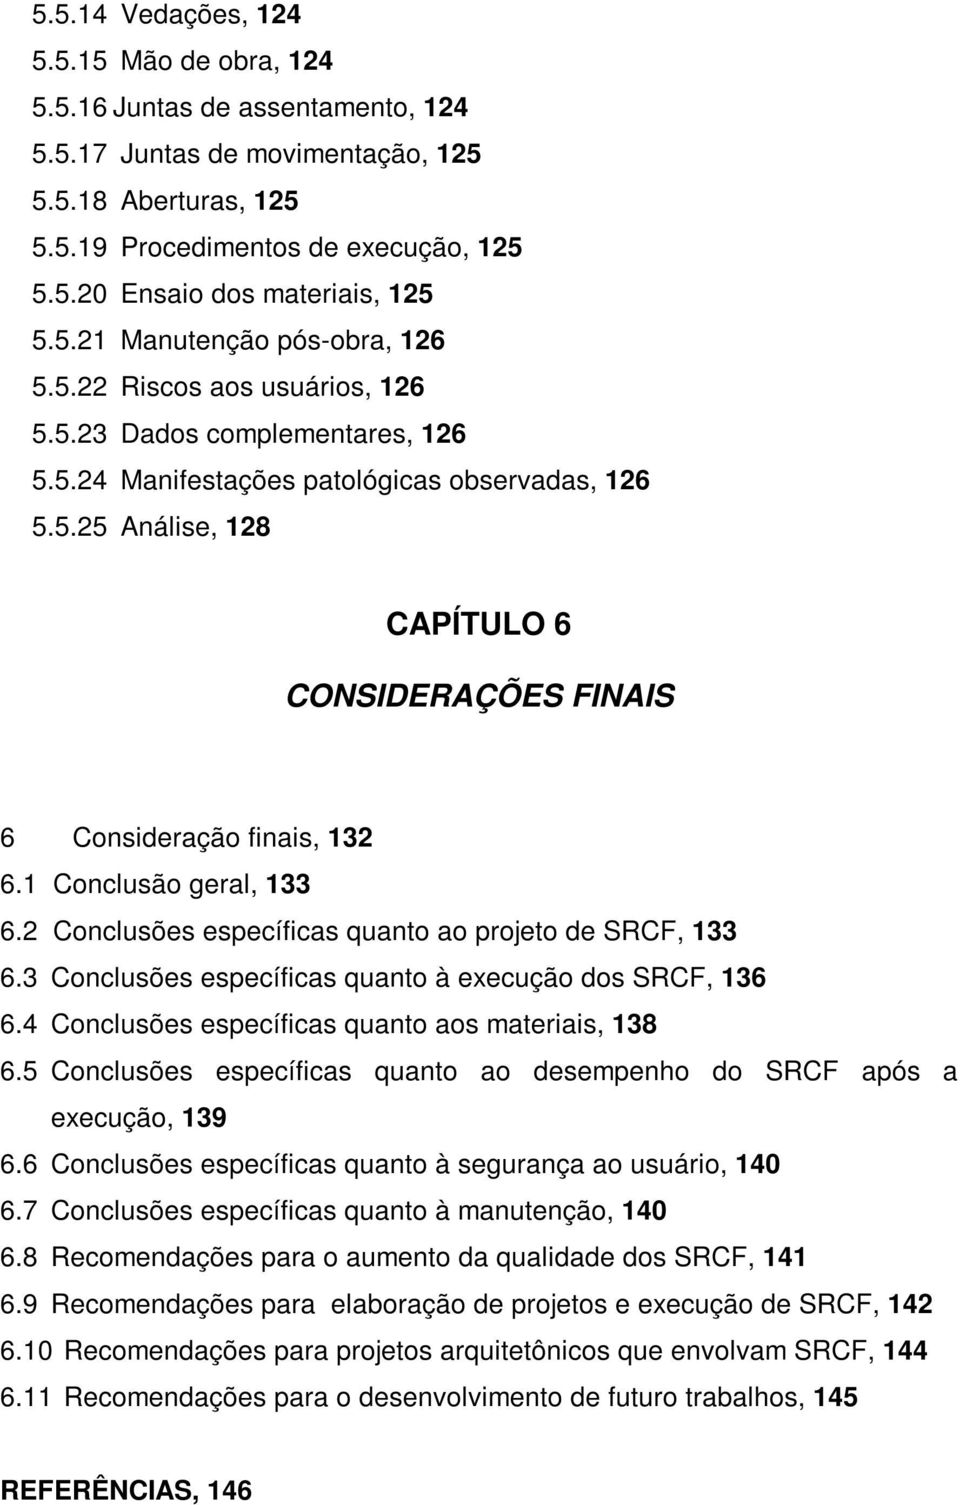 1 Conclusão geral, 133 6.2 Conclusões específicas quanto ao projeto de SRCF, 133 6.3 Conclusões específicas quanto à execução dos SRCF, 136 6.4 Conclusões específicas quanto aos materiais, 138 6.